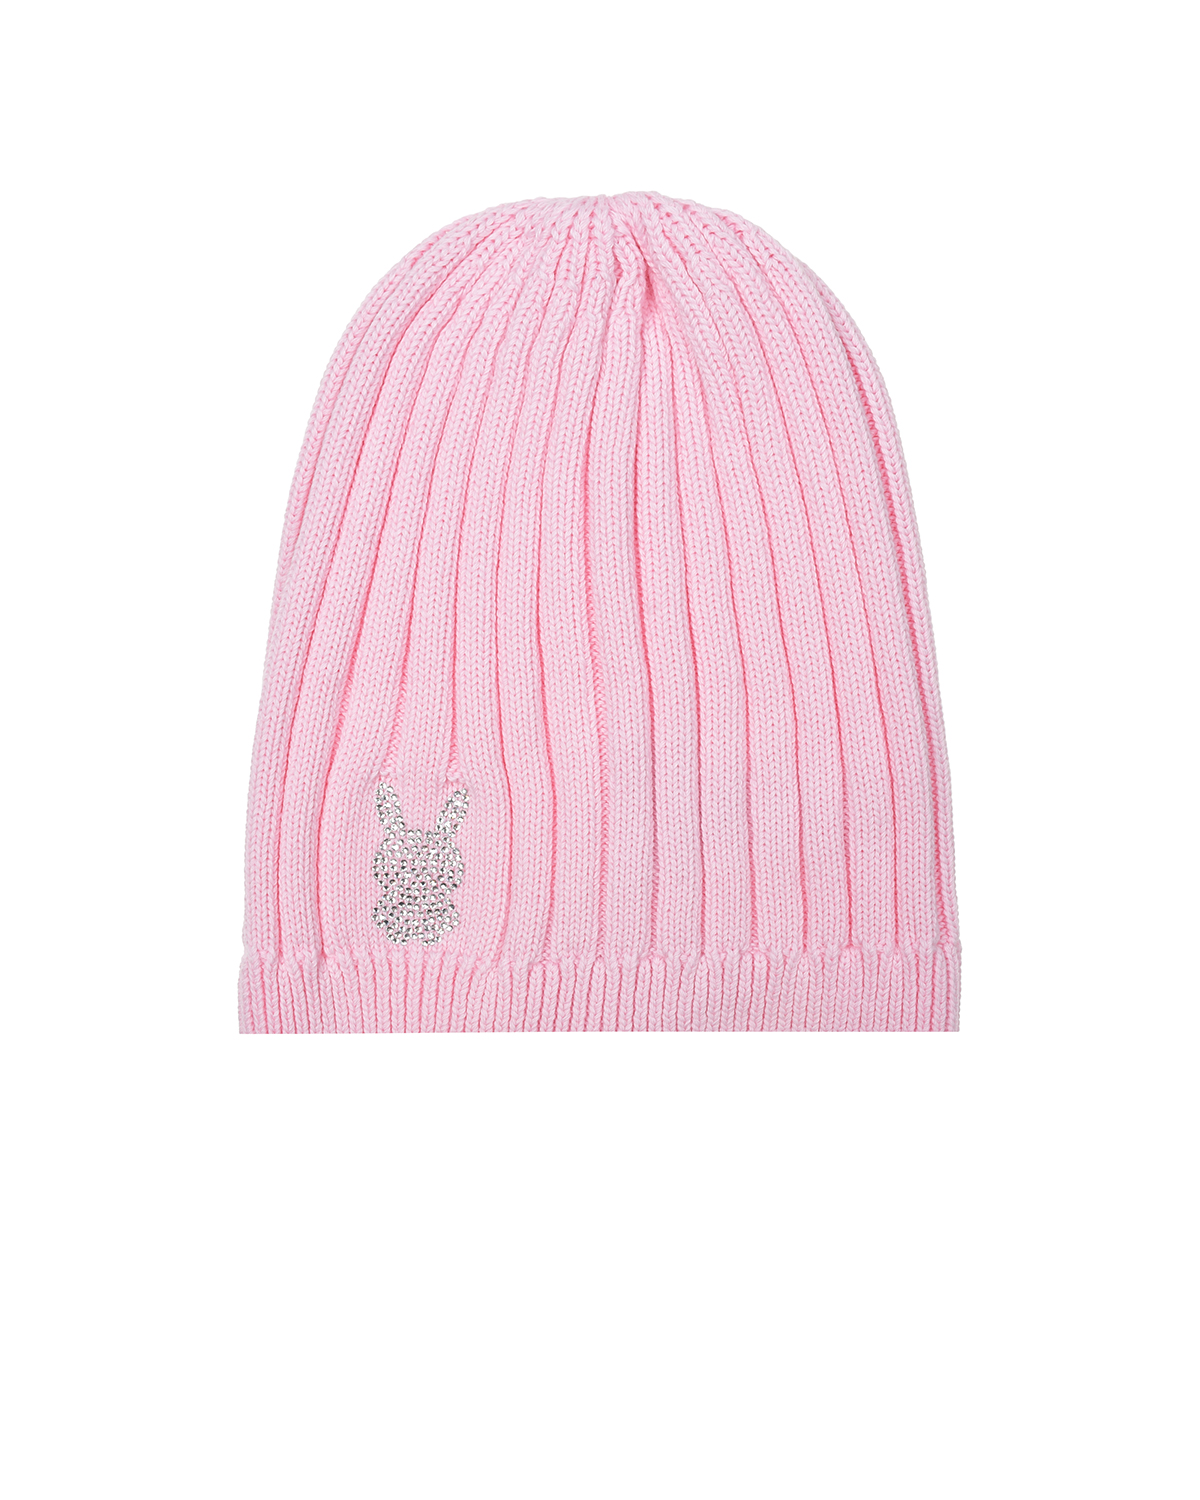 Розовая шапка с зайчиком из стразов Chobi, размер 55, цвет розовый